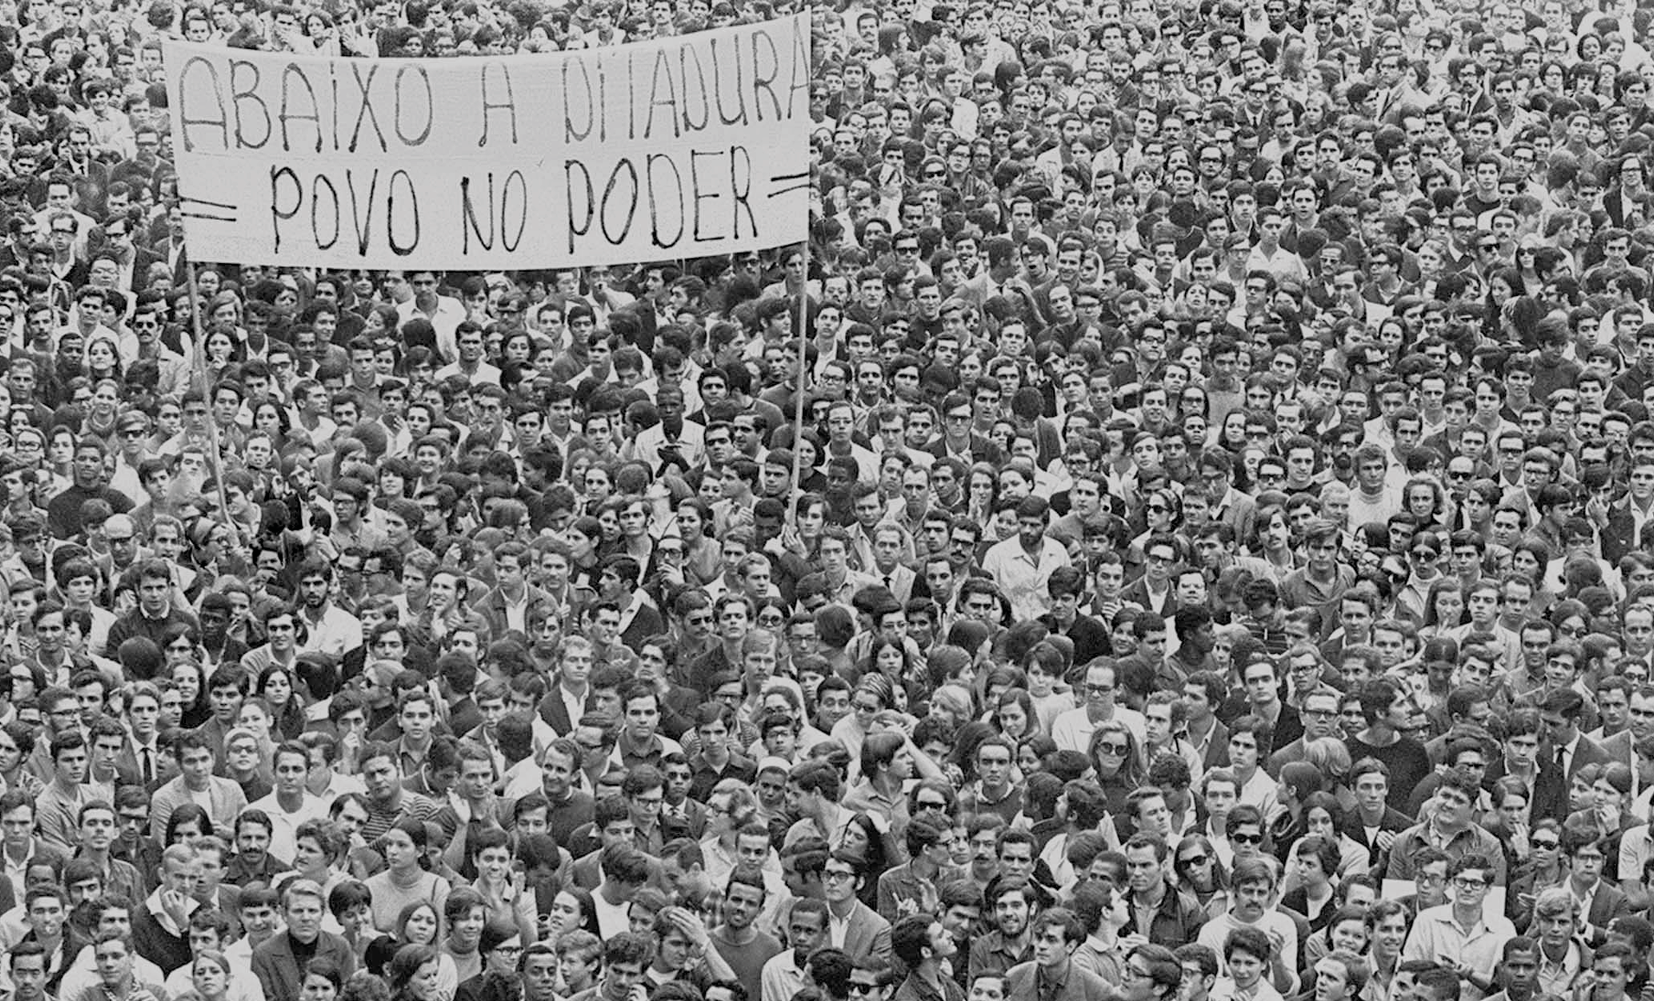 Fotografia em preto e branco. Uma multidão de pessoas reunidas carregando uma grande faixa com os dizeres: Abaixo a ditadura, povo no poder.